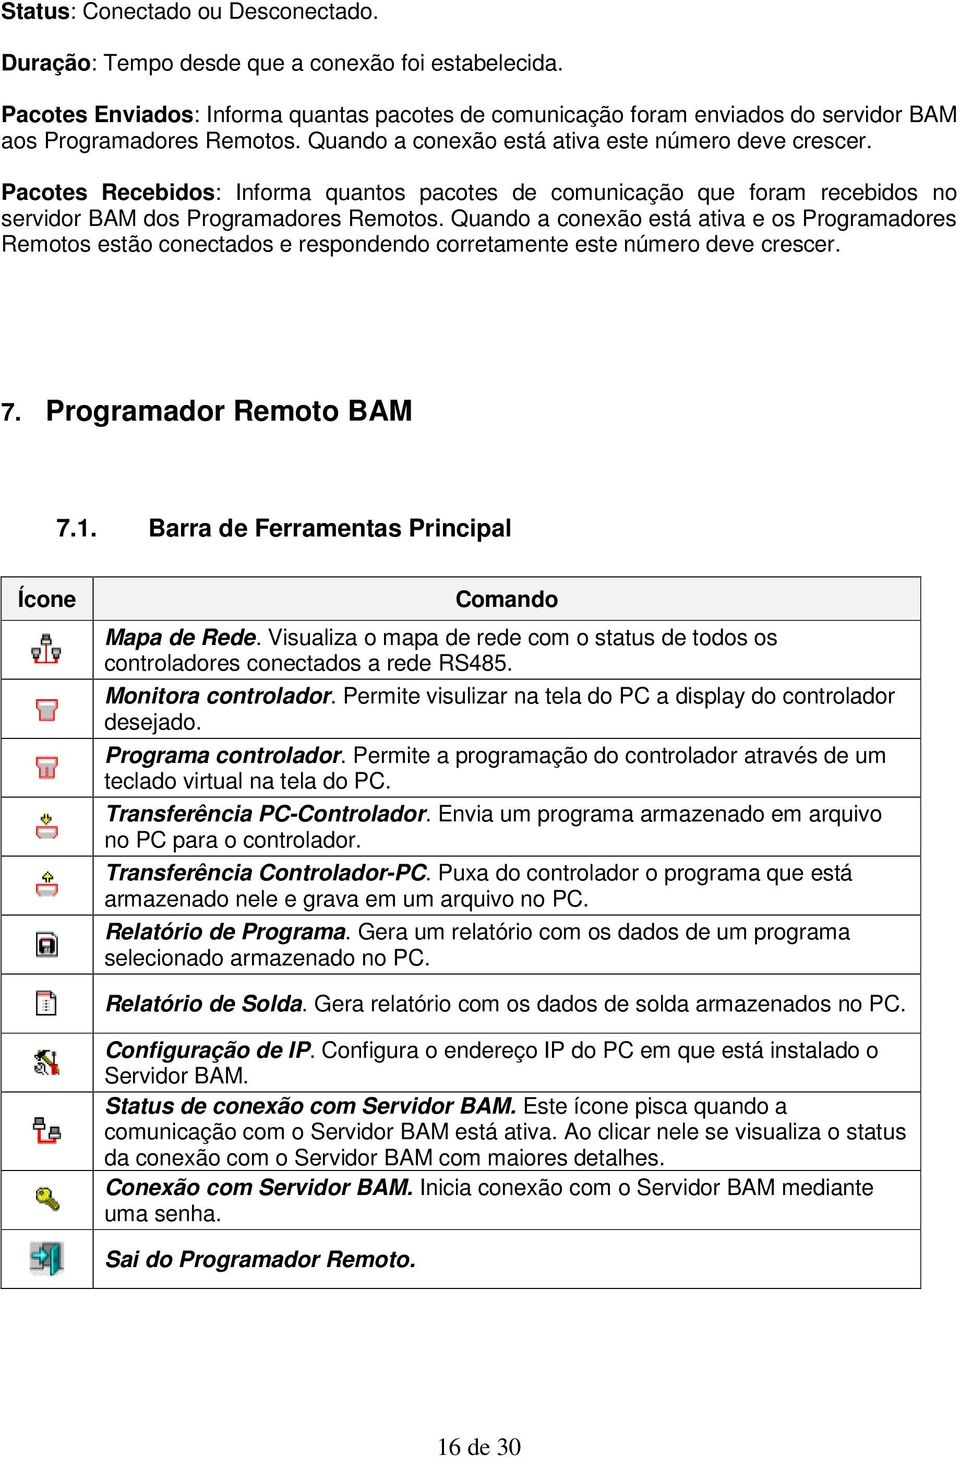 Pacotes Recebidos: Informa quantos pacotes de comunicação que foram recebidos no servidor BAM dos Programadores Remotos.